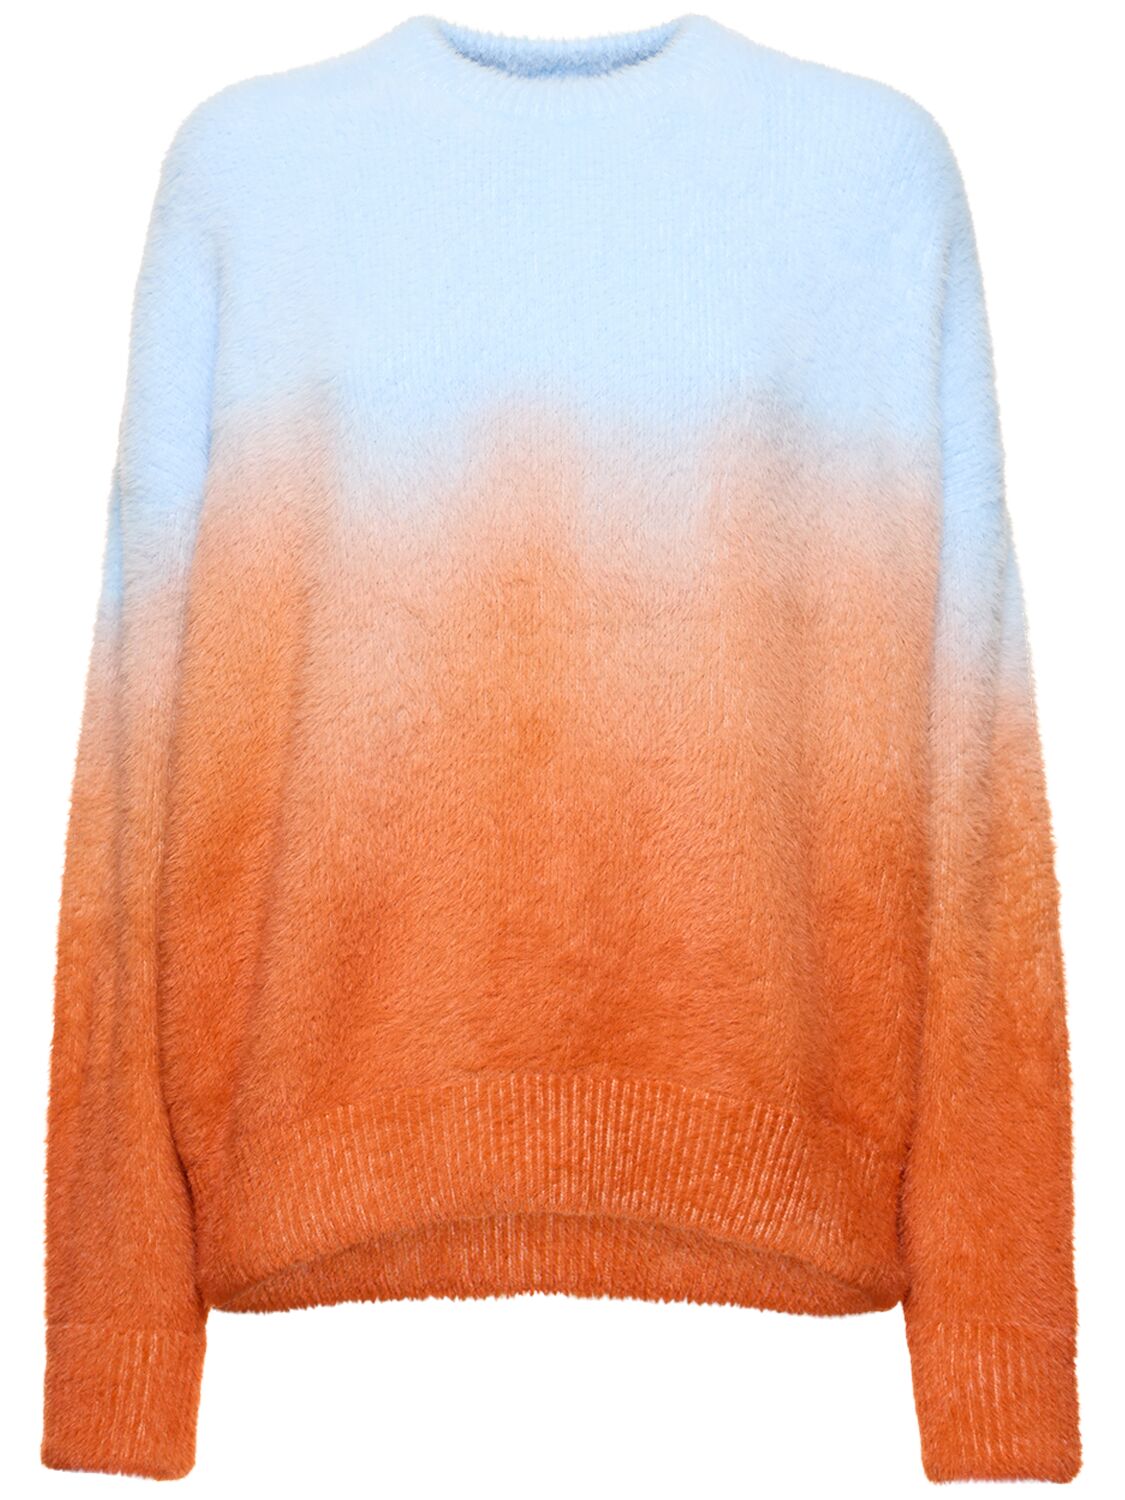 Image of Sunset Degradé Knit Crewneck Sweater